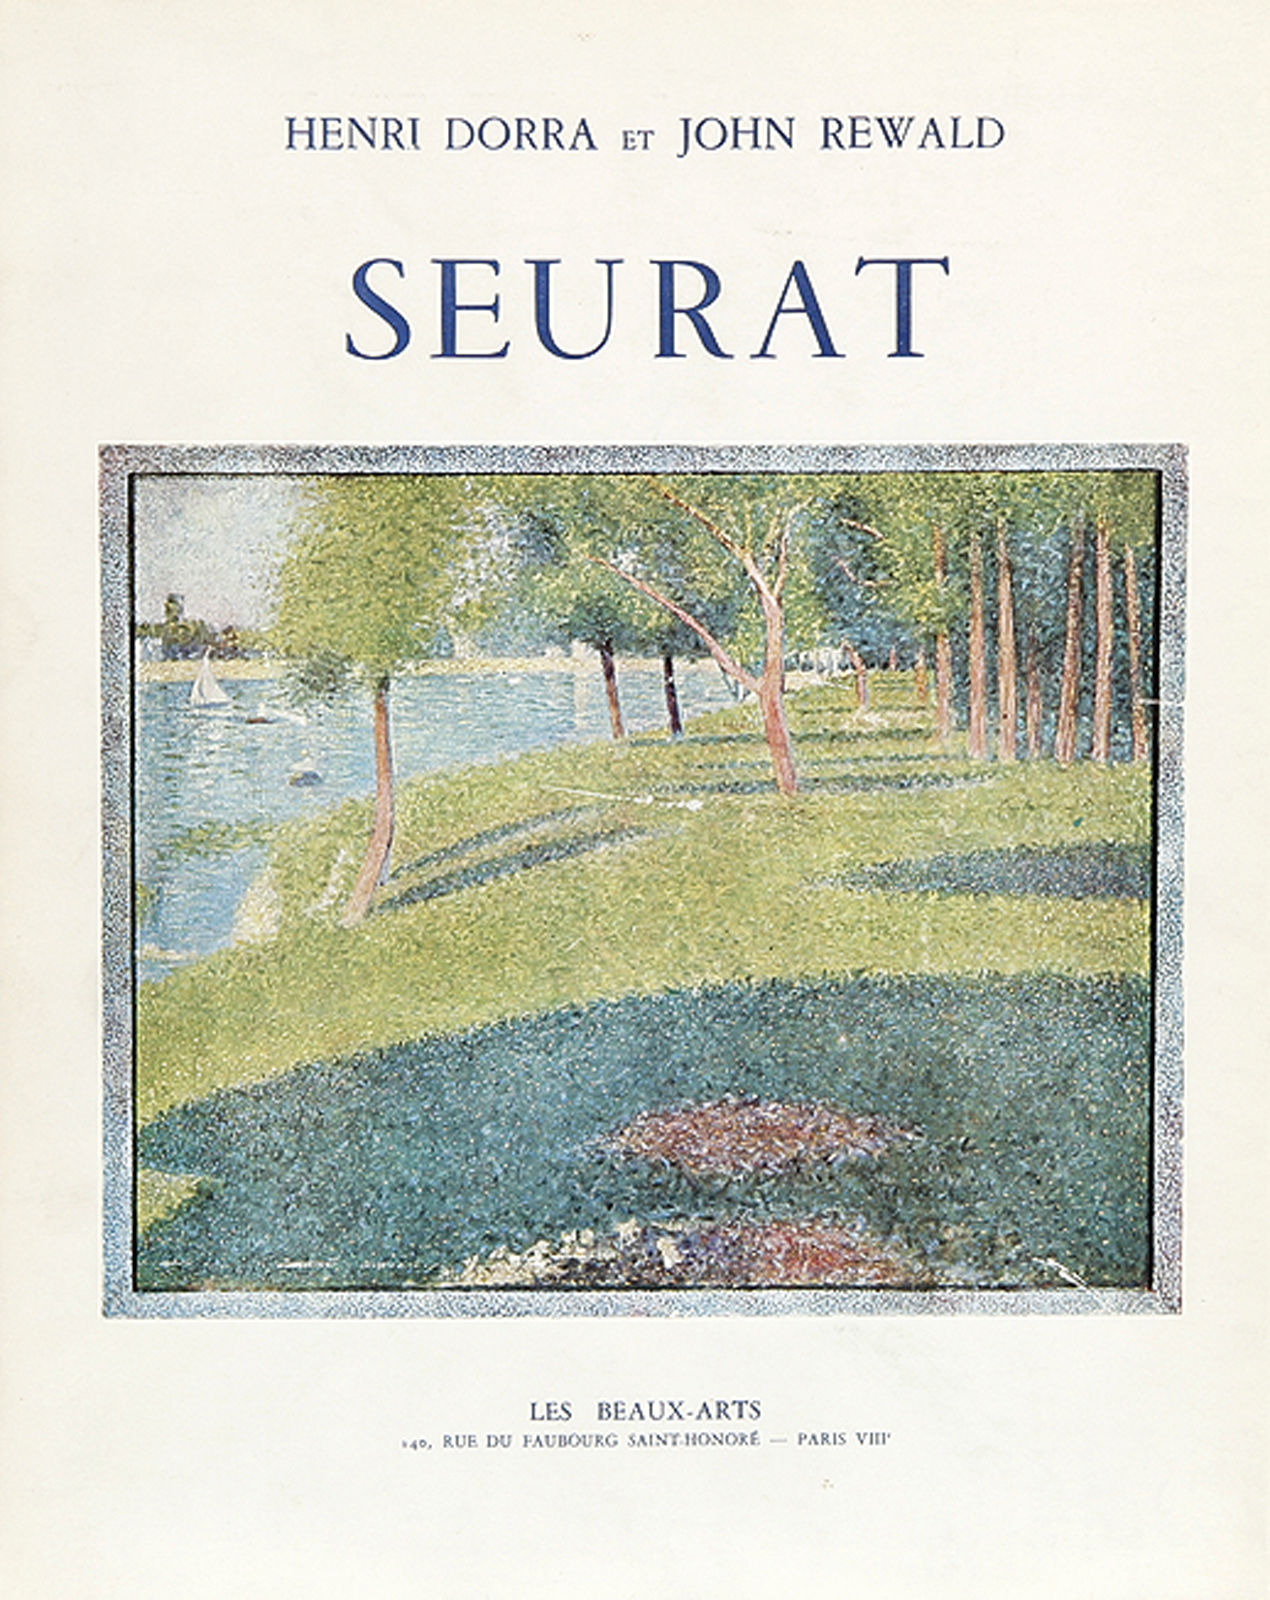 Dorra, Henri/John Rewald; Seurat. L"Oeuvre peint, Biographie et Catalogue critique.